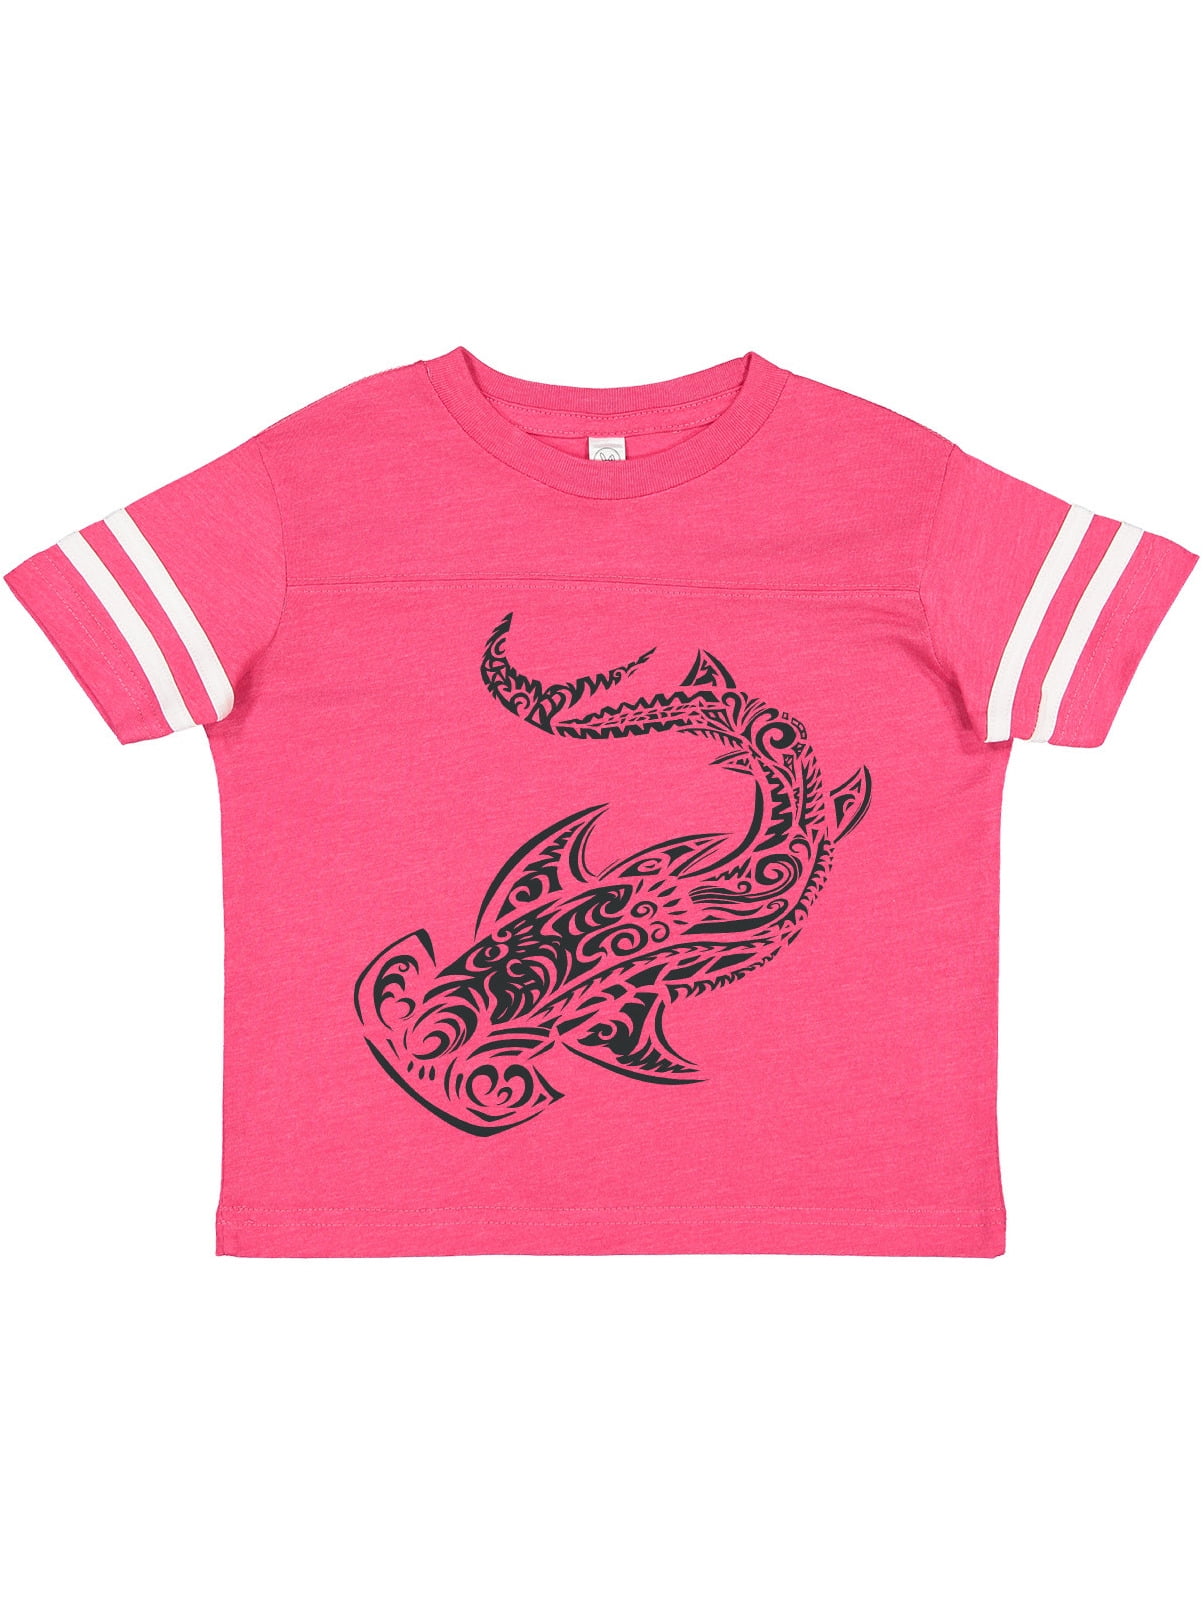 Hammer Head - Hammerhead Shark - Kids T-Shirt